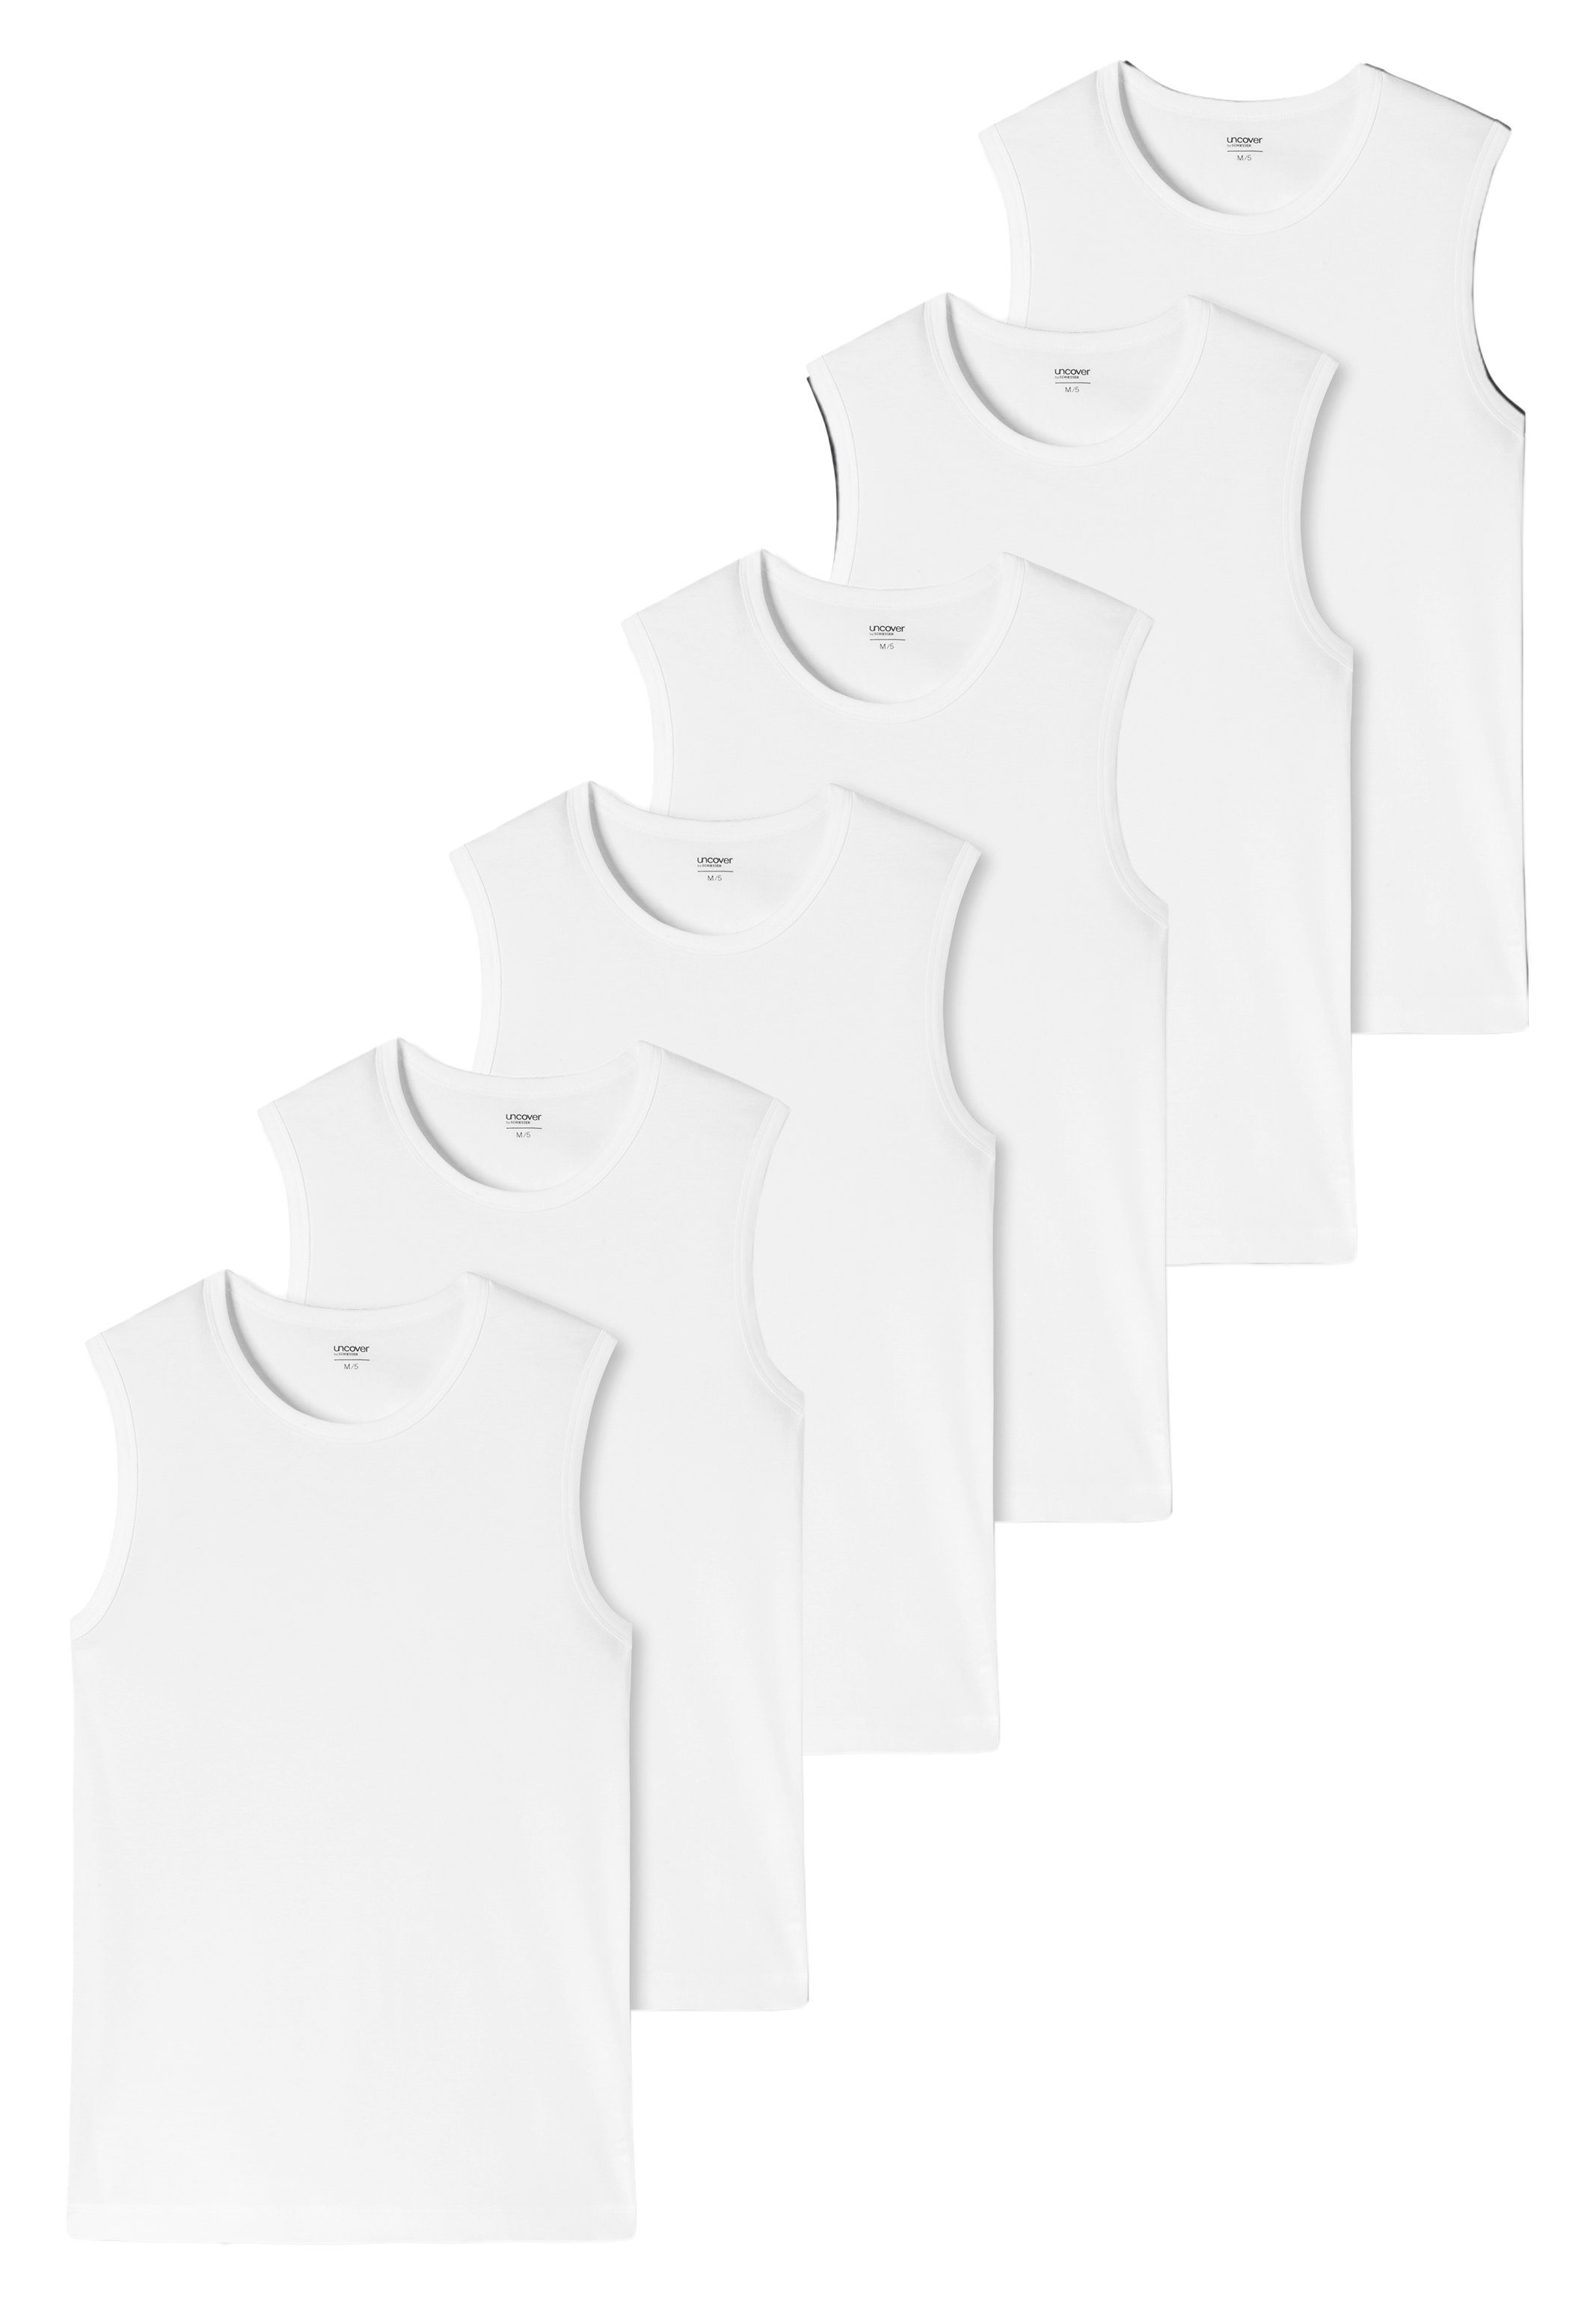 Weiß Unterhemd Tops by uncover Tanktop mit Basic - 6-St) SCHIESSER Pack 6er Passform / Baumwolle (Spar-Set, perfekter Unterhemd Tank -